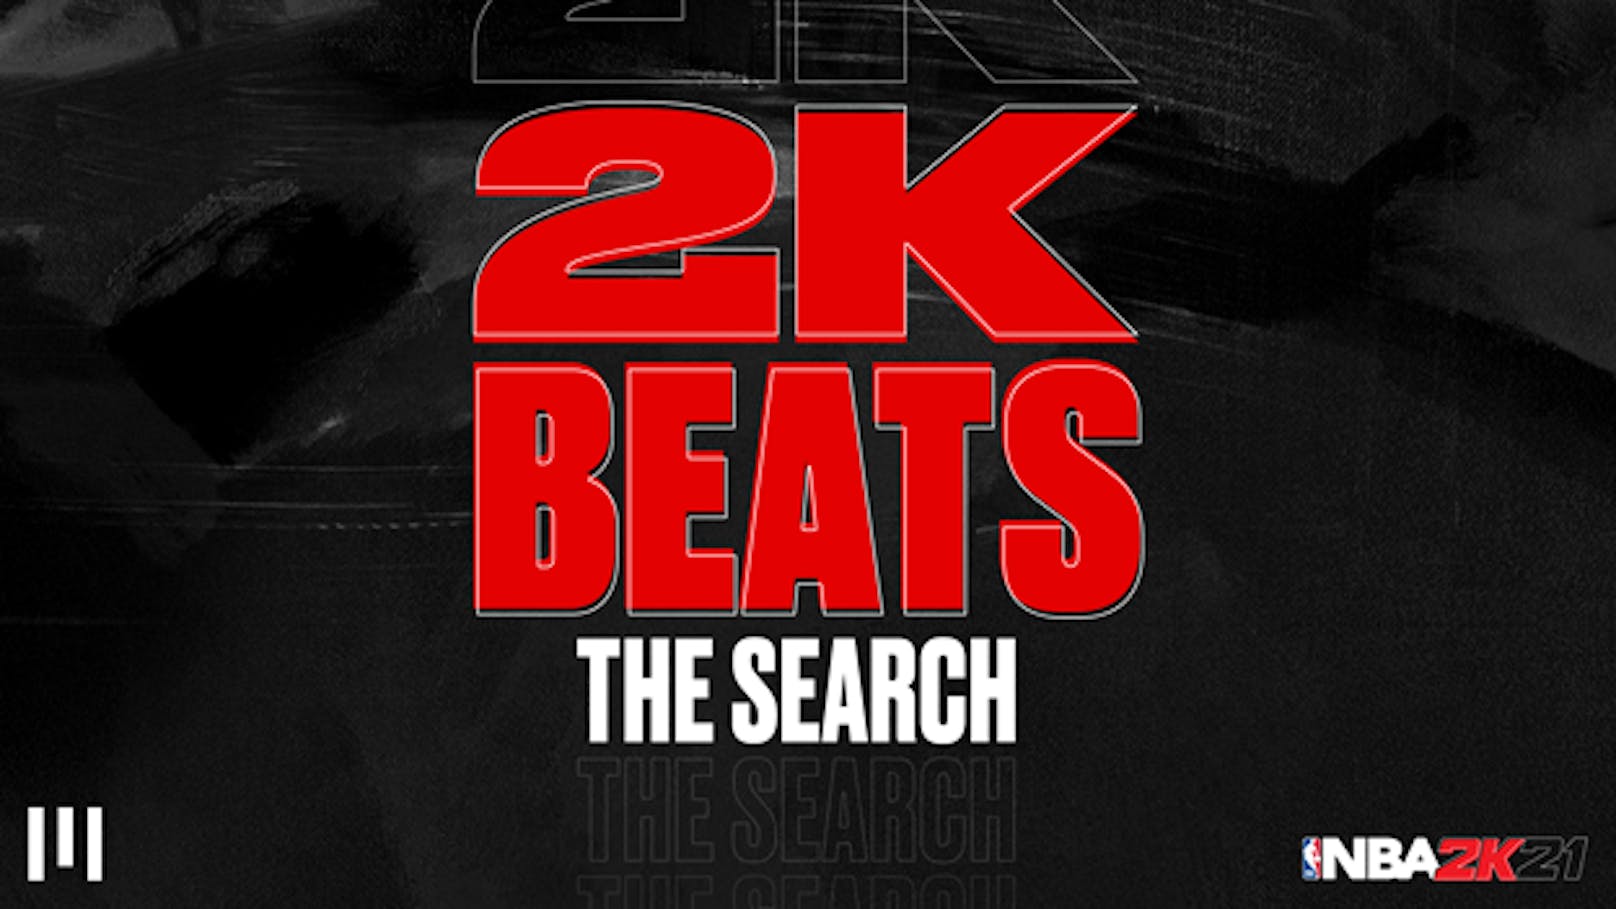 NBA 2K21 und UnitedMasters geben die ersten 10 Musiker für den "NBA 2K"-Soundtrack bekannt.